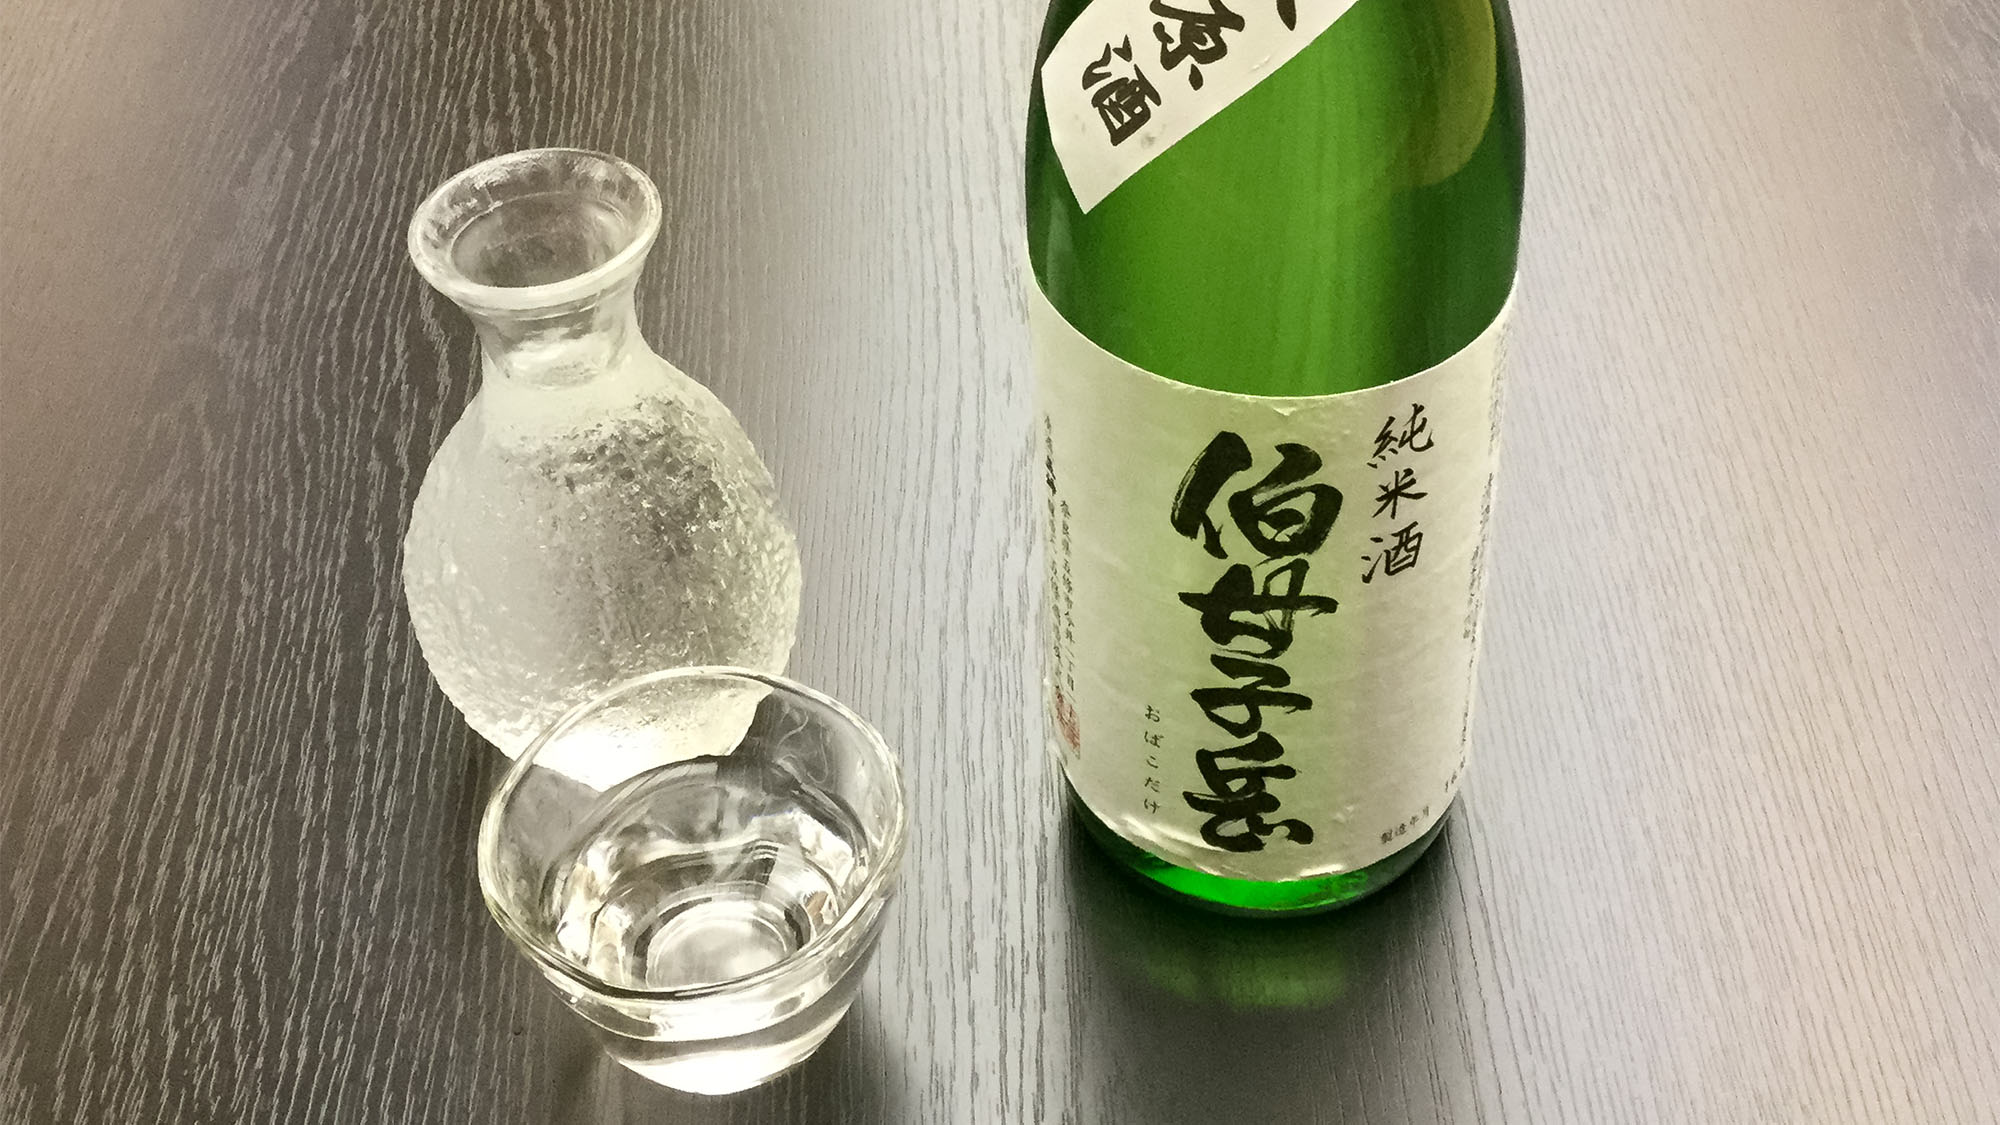 ・【料理】野迫川村のお米と水で作られた地酒、「おぼこだけ」です